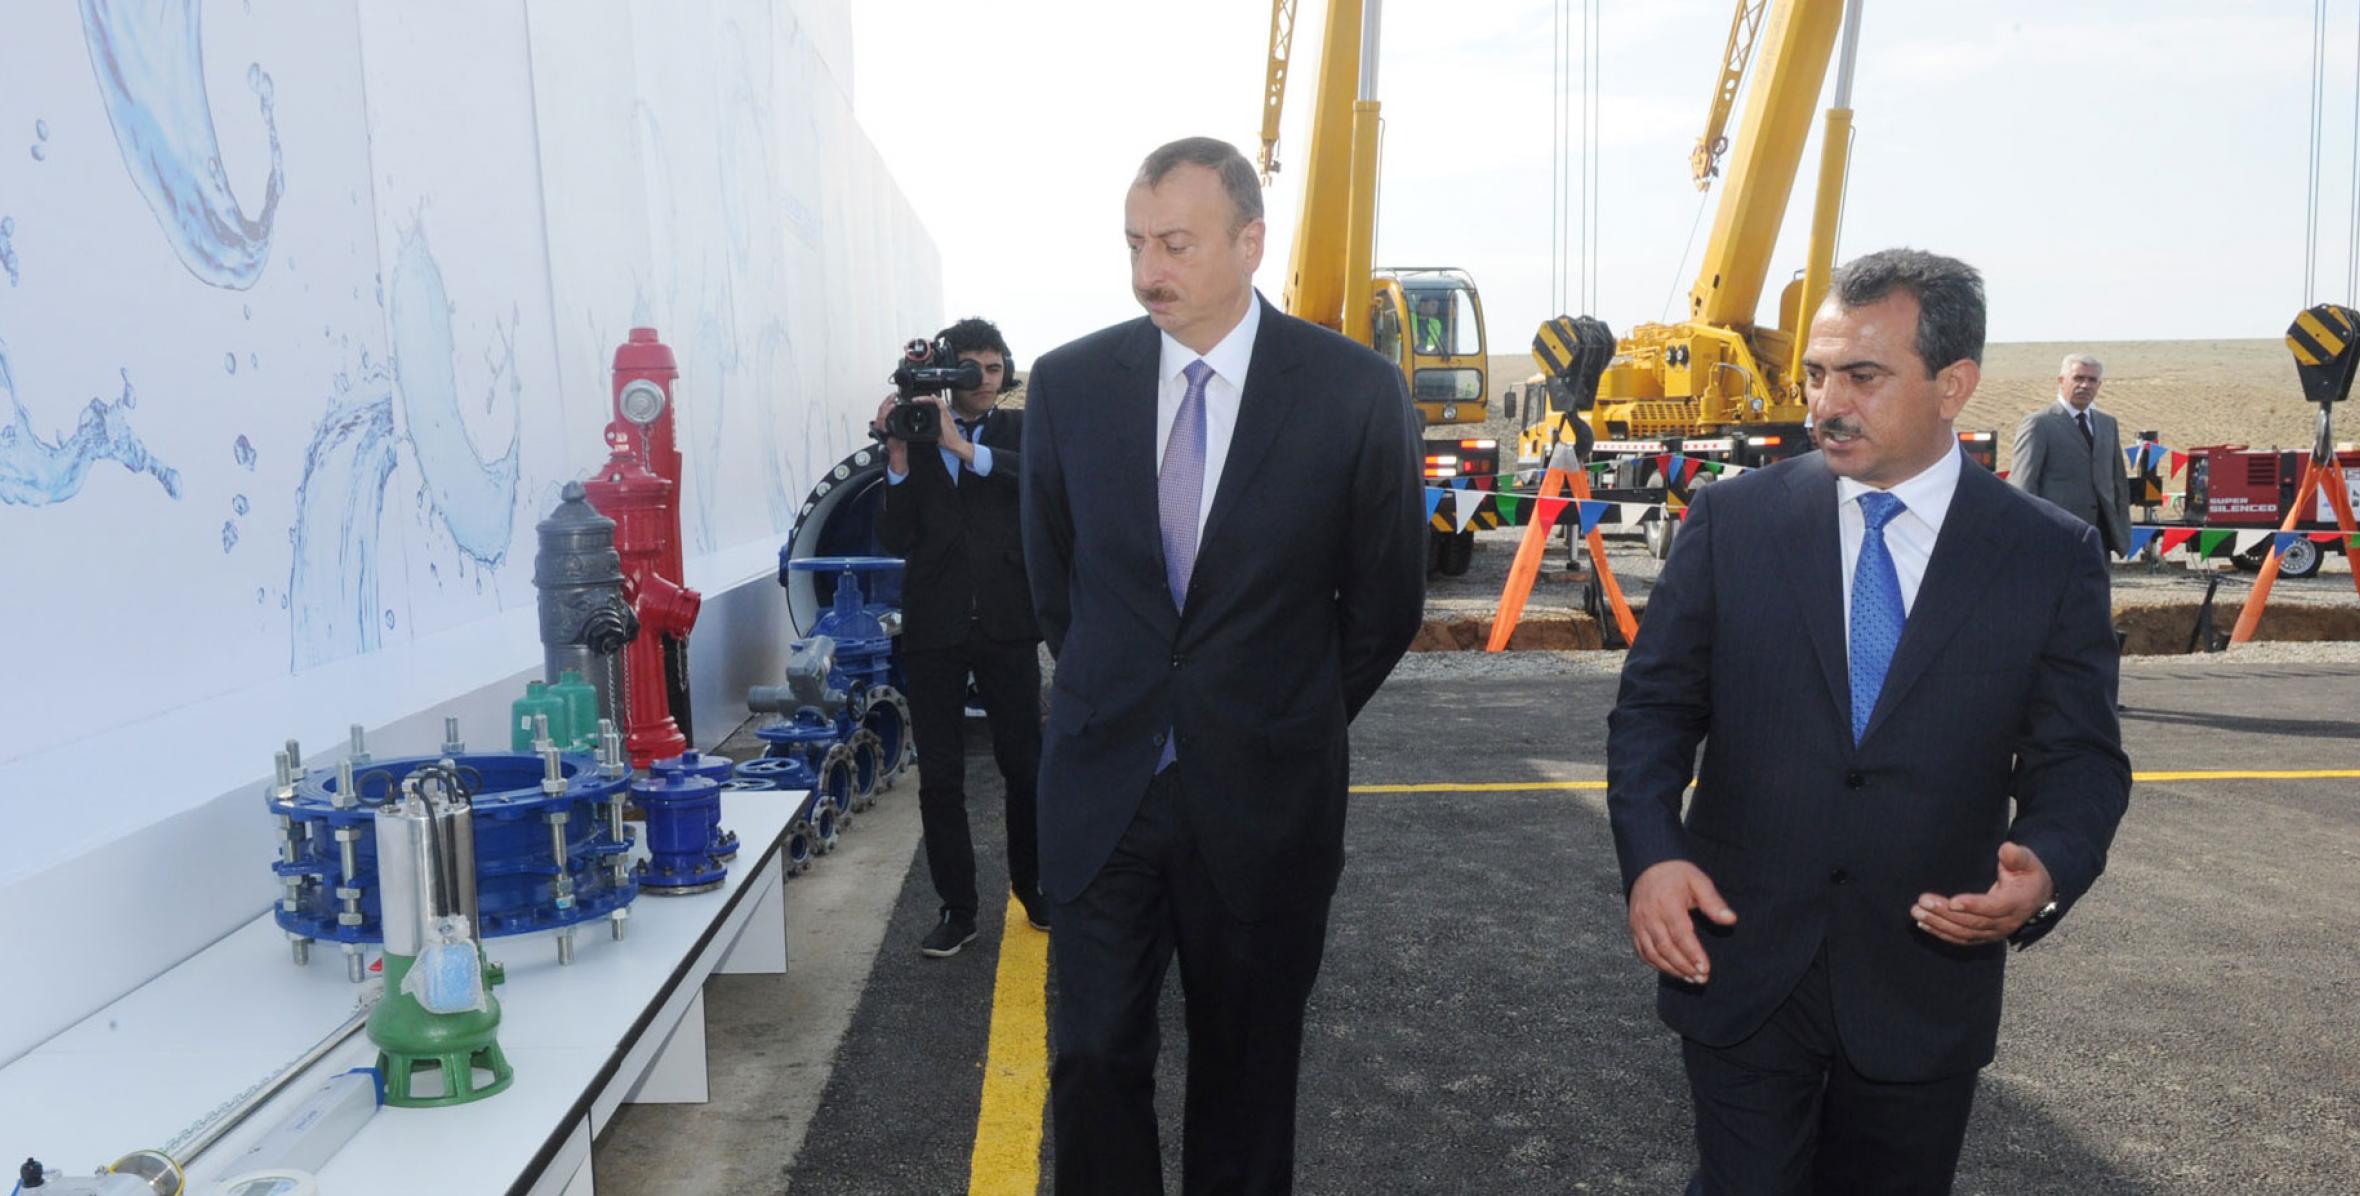 Ильхам Алиев принял участие в церемонии закладки фундамента Ширван-Муганской водопроводной системы в Гаджигабуле